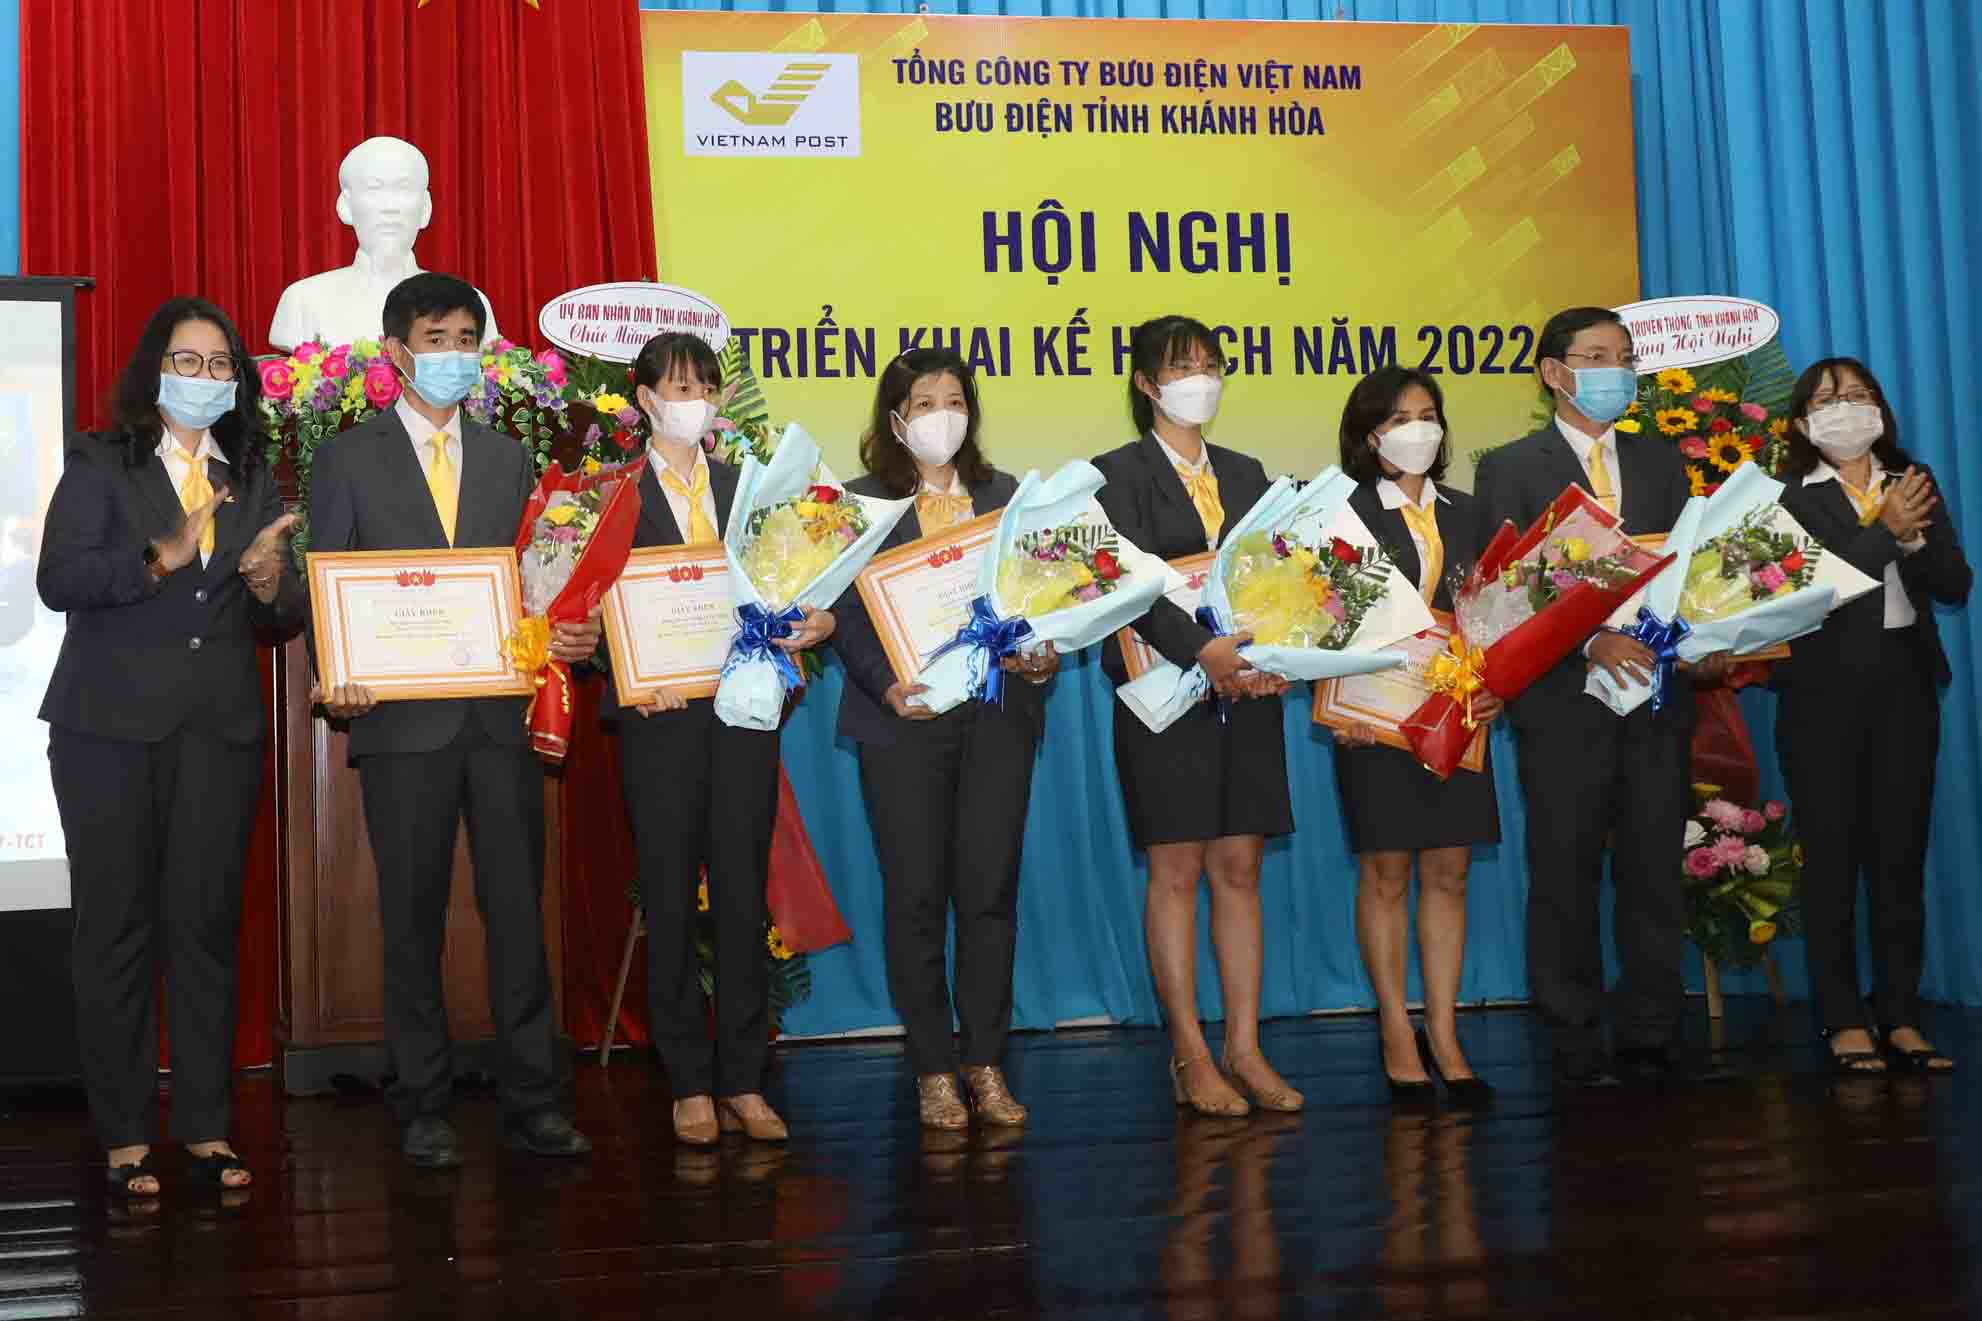 Lãnh đạo Bưu điện tỉnh Khánh Hòa trao giấy khen của Tổng công ty Bưu điện Việt Nam cho các tập thể.